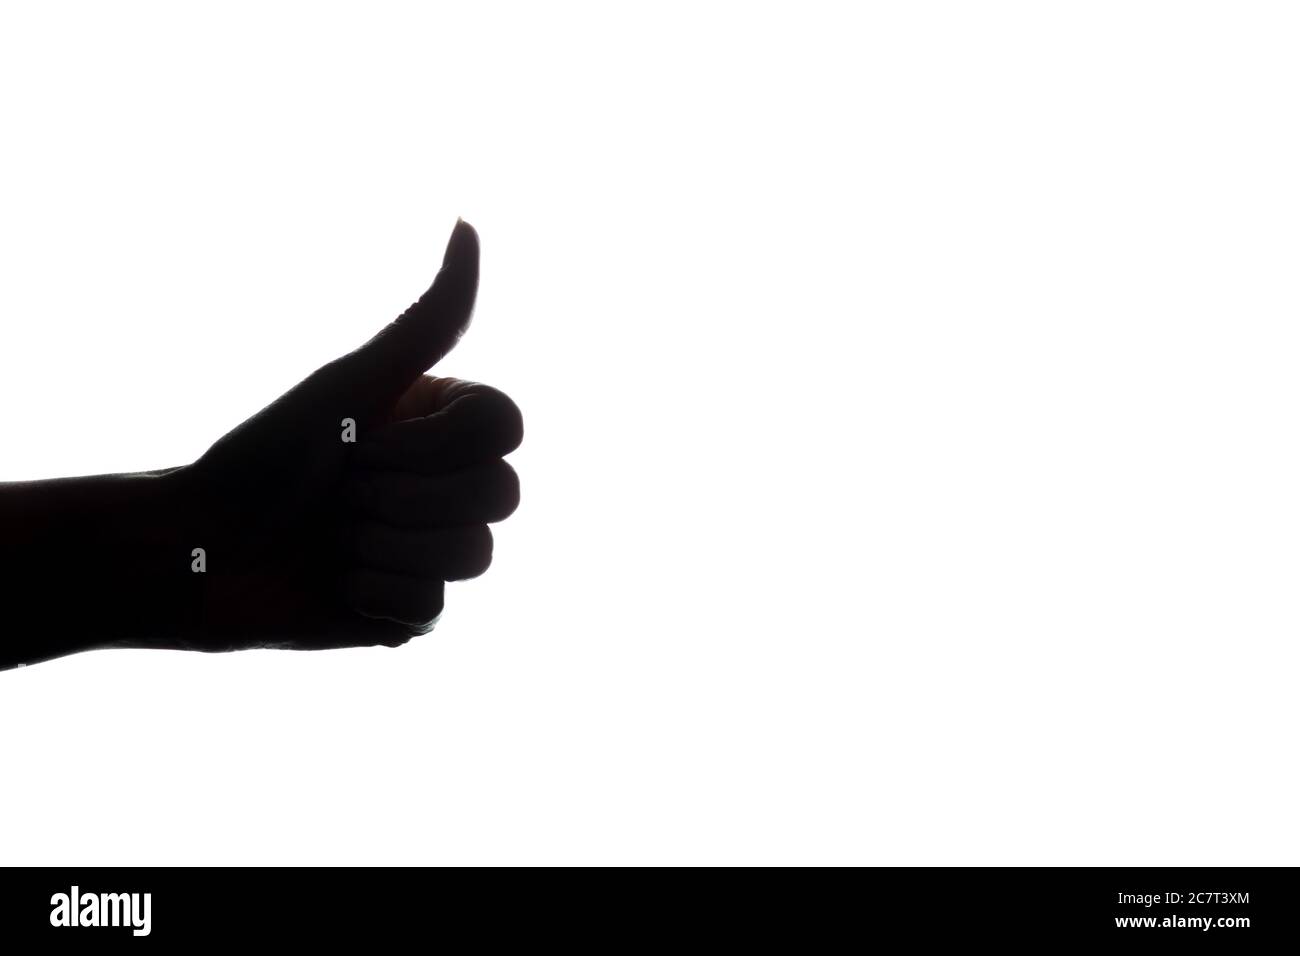 Frauen Hand gestreckt nach vorne mit einem OK-Zeichen auf weißem Hintergrund - Silhouette OK-Zeichen auf weißem Hintergrund Stockfoto